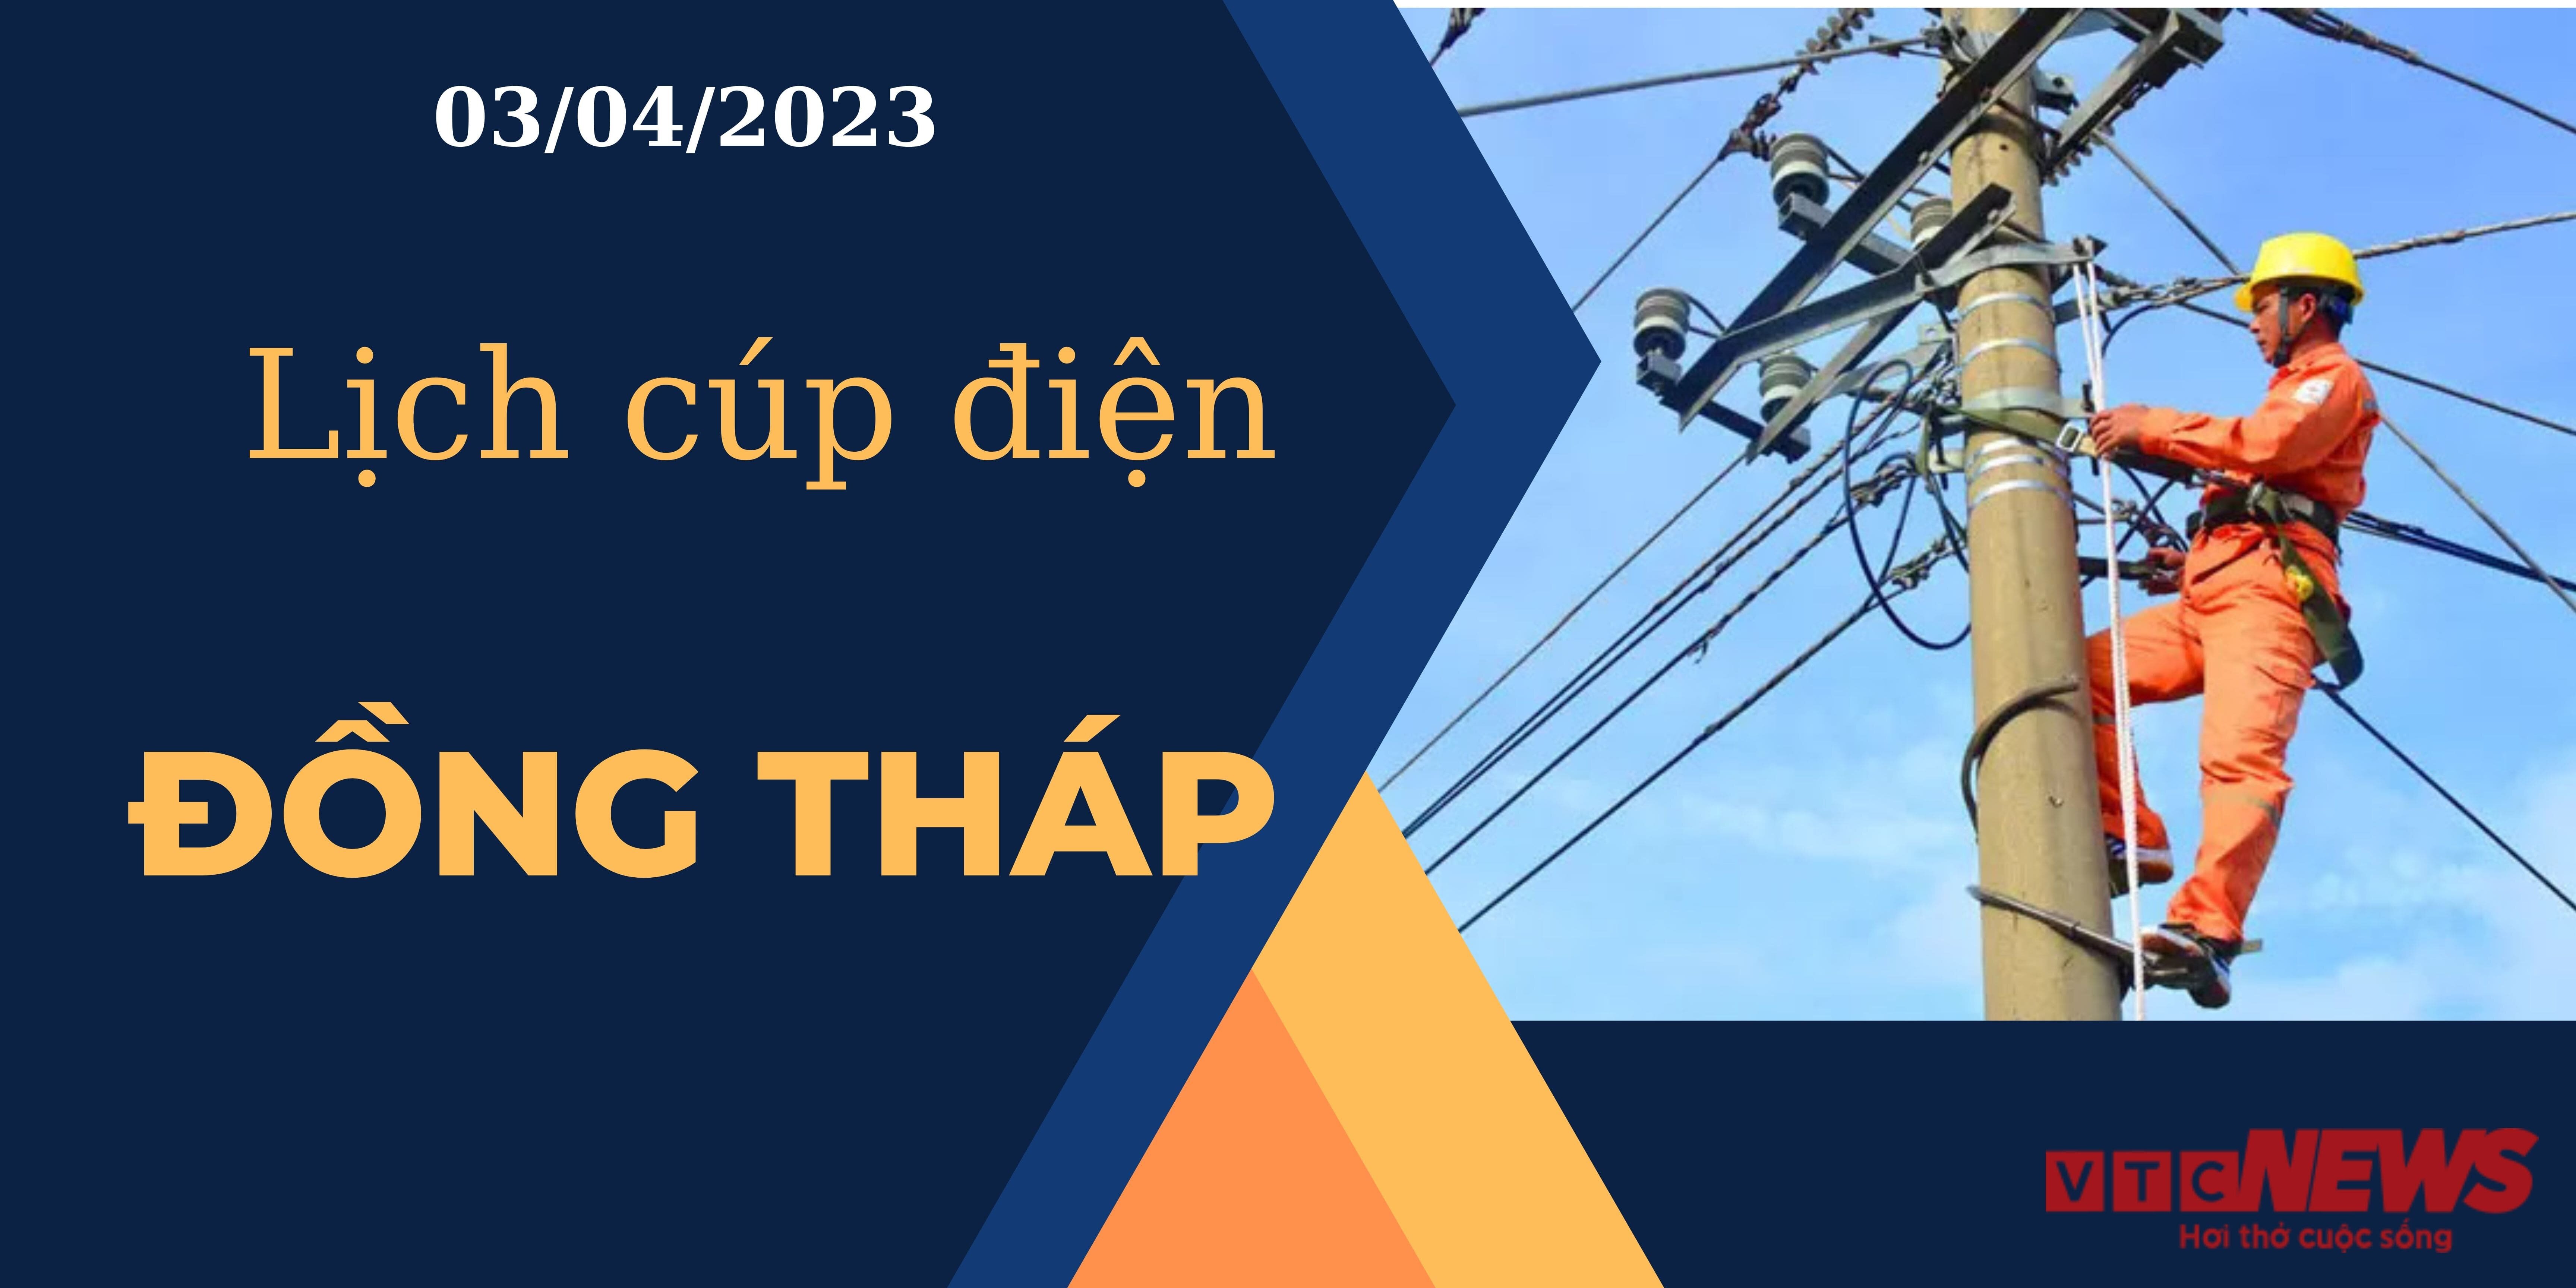 Lịch cúp điện hôm nay tại Đồng Tháp ngày 03/04/2023 - 1